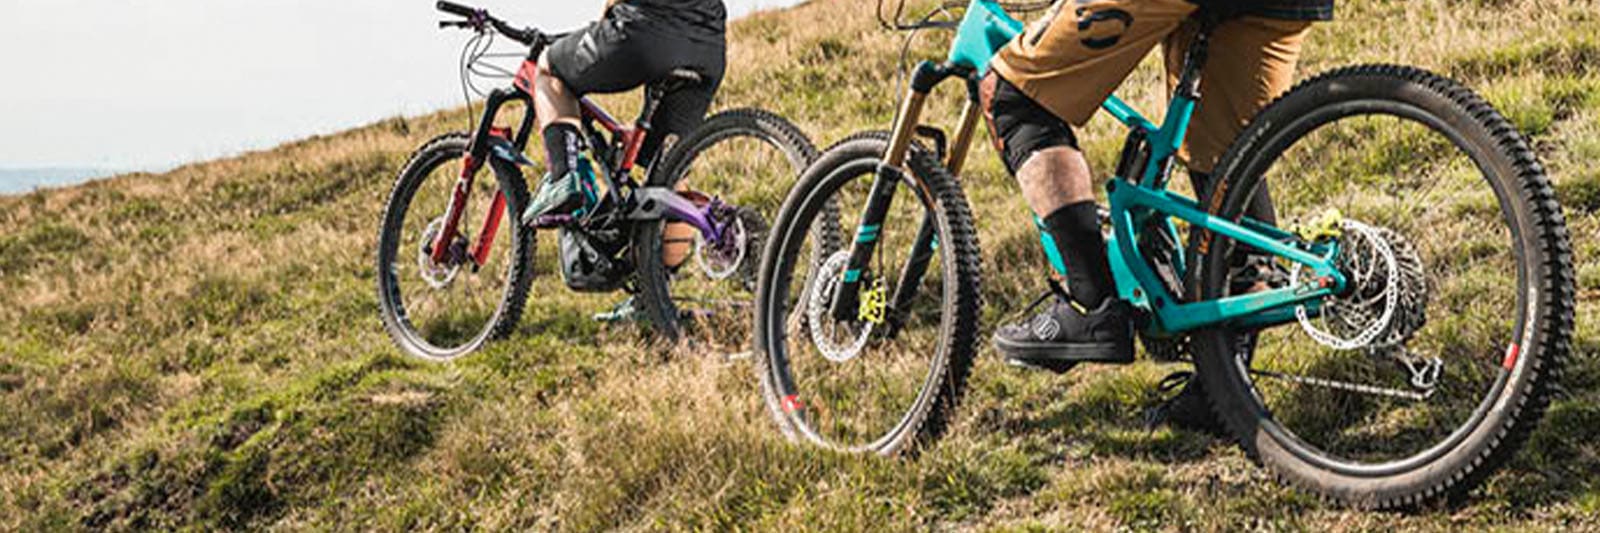 Zapatillas para ciclismo MTB de enduro, downhill y trail